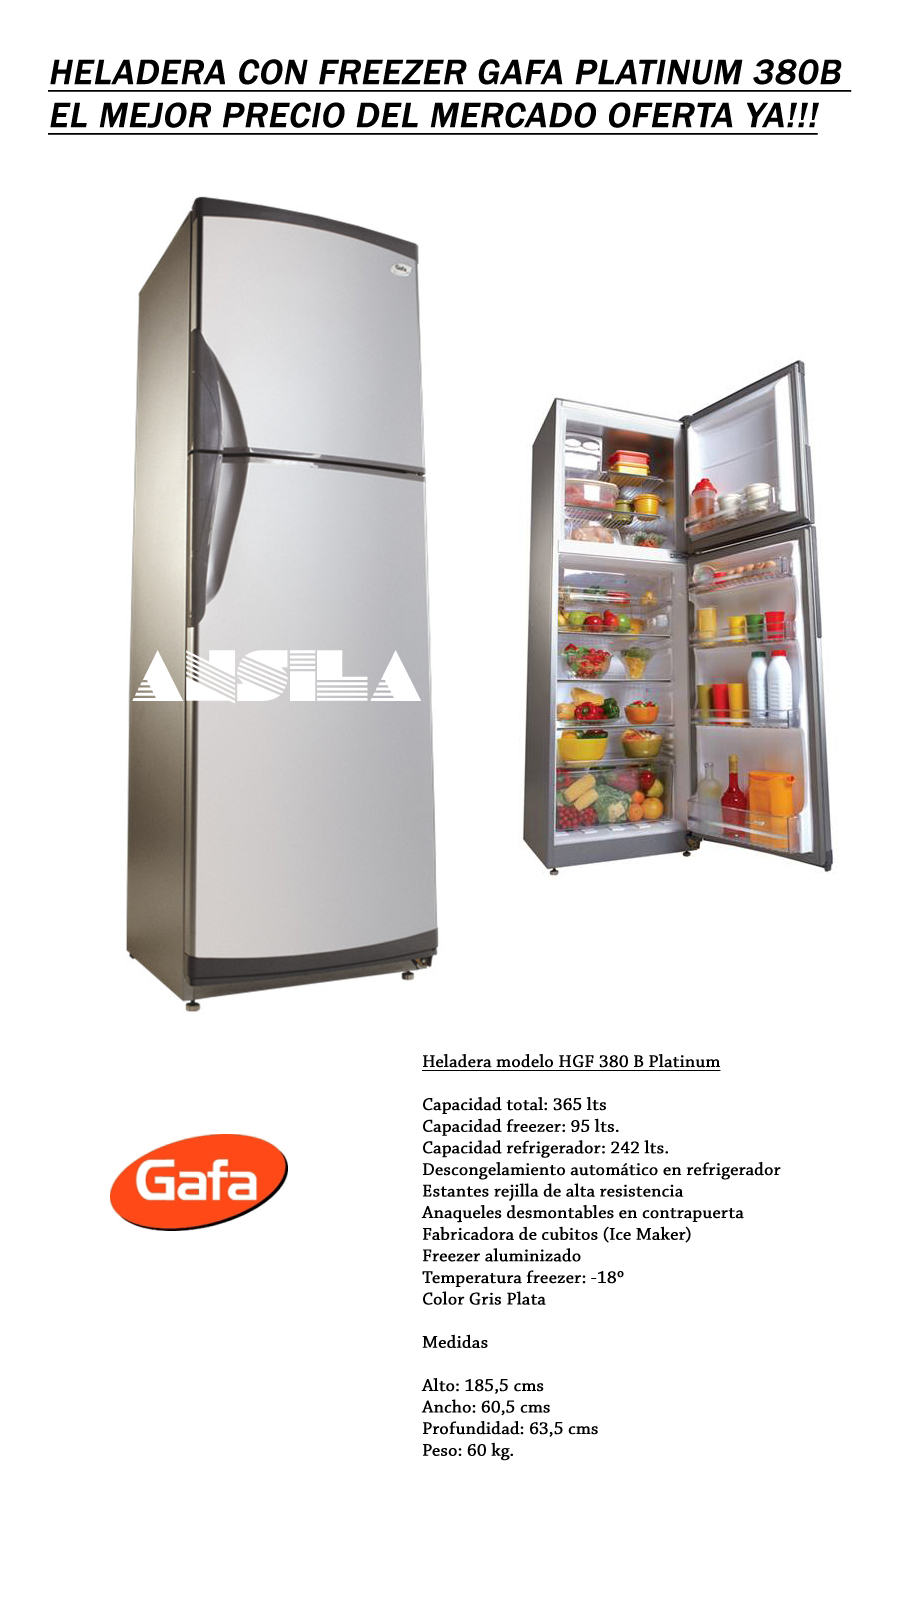 YoReparo - Foros - Refrigeracin, heladeras y freezers